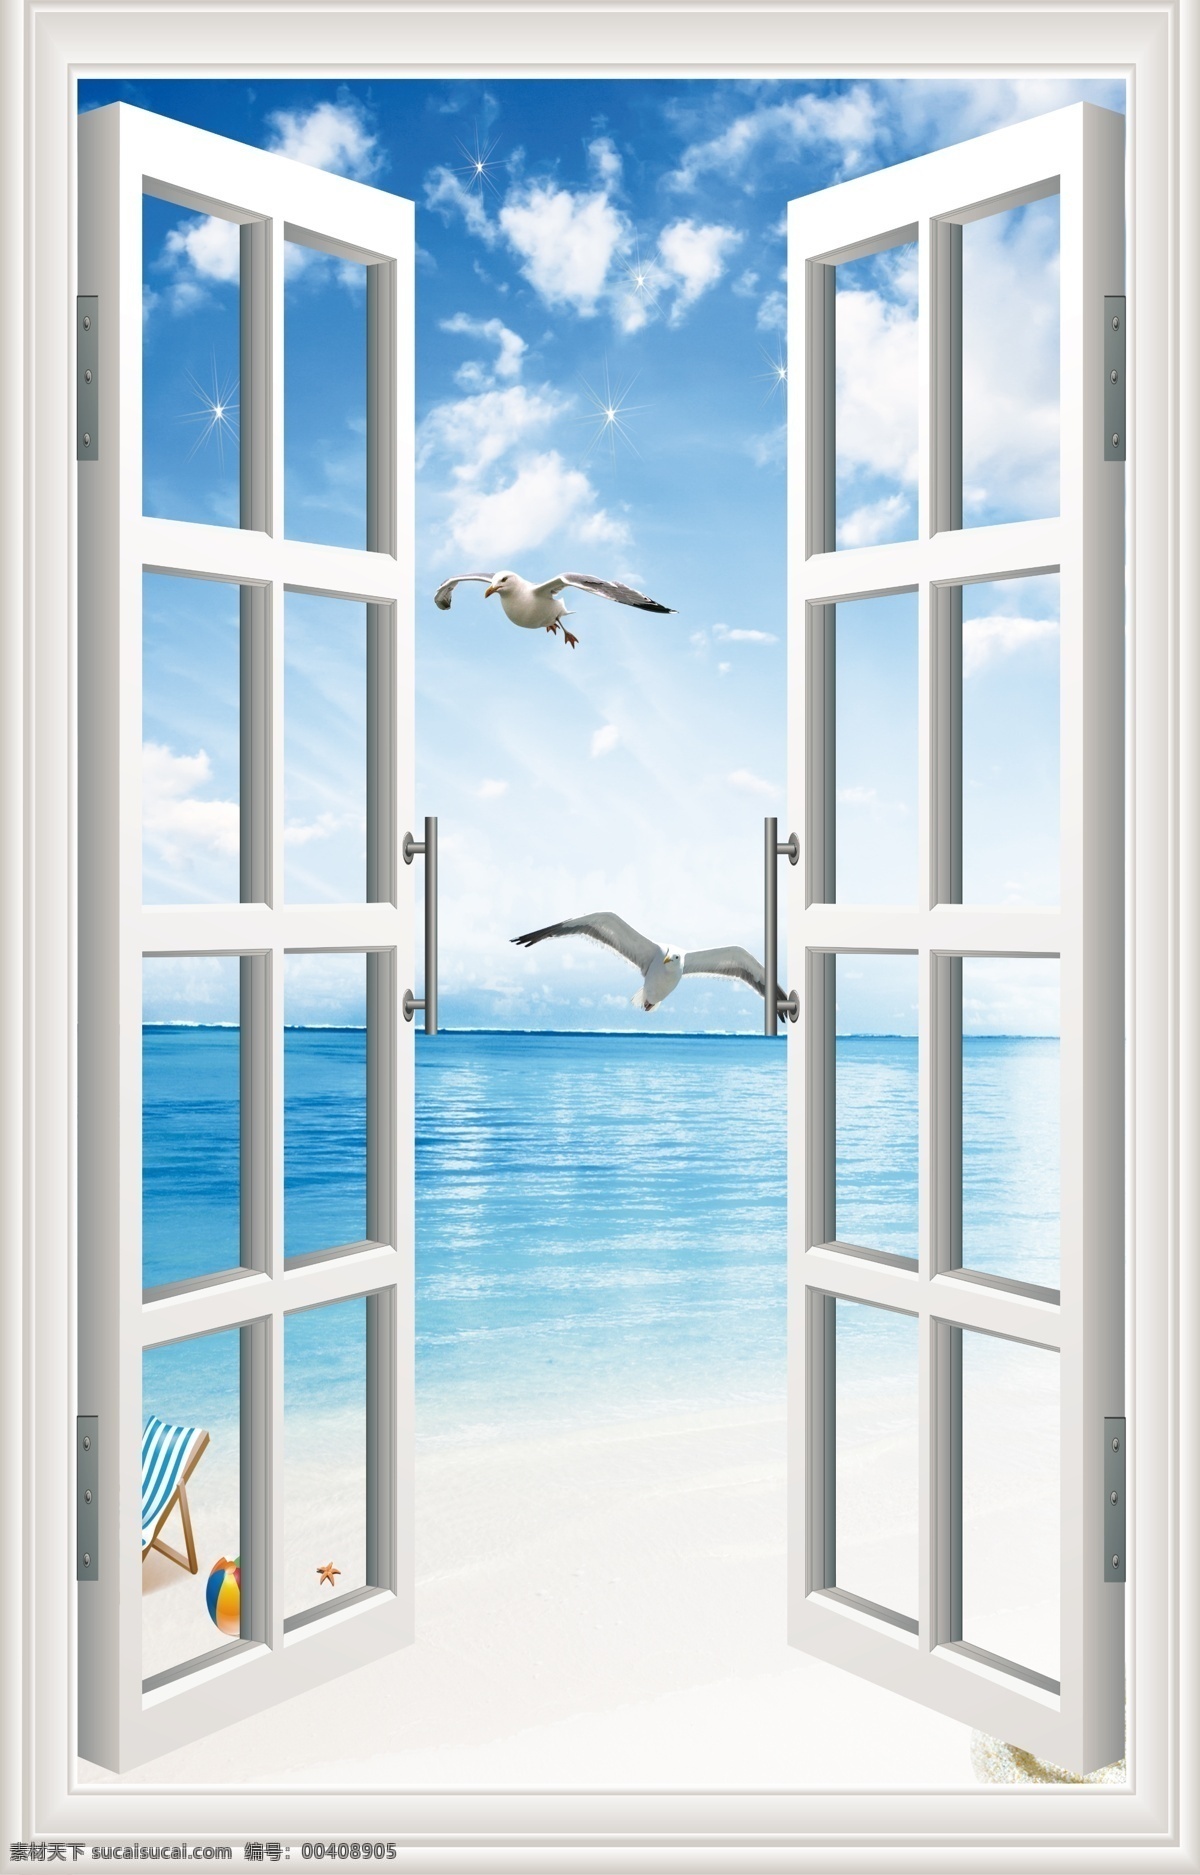 窗外风景 假窗 窗户 海景 天空 云彩 海鸥 海 家居 门窗 分层